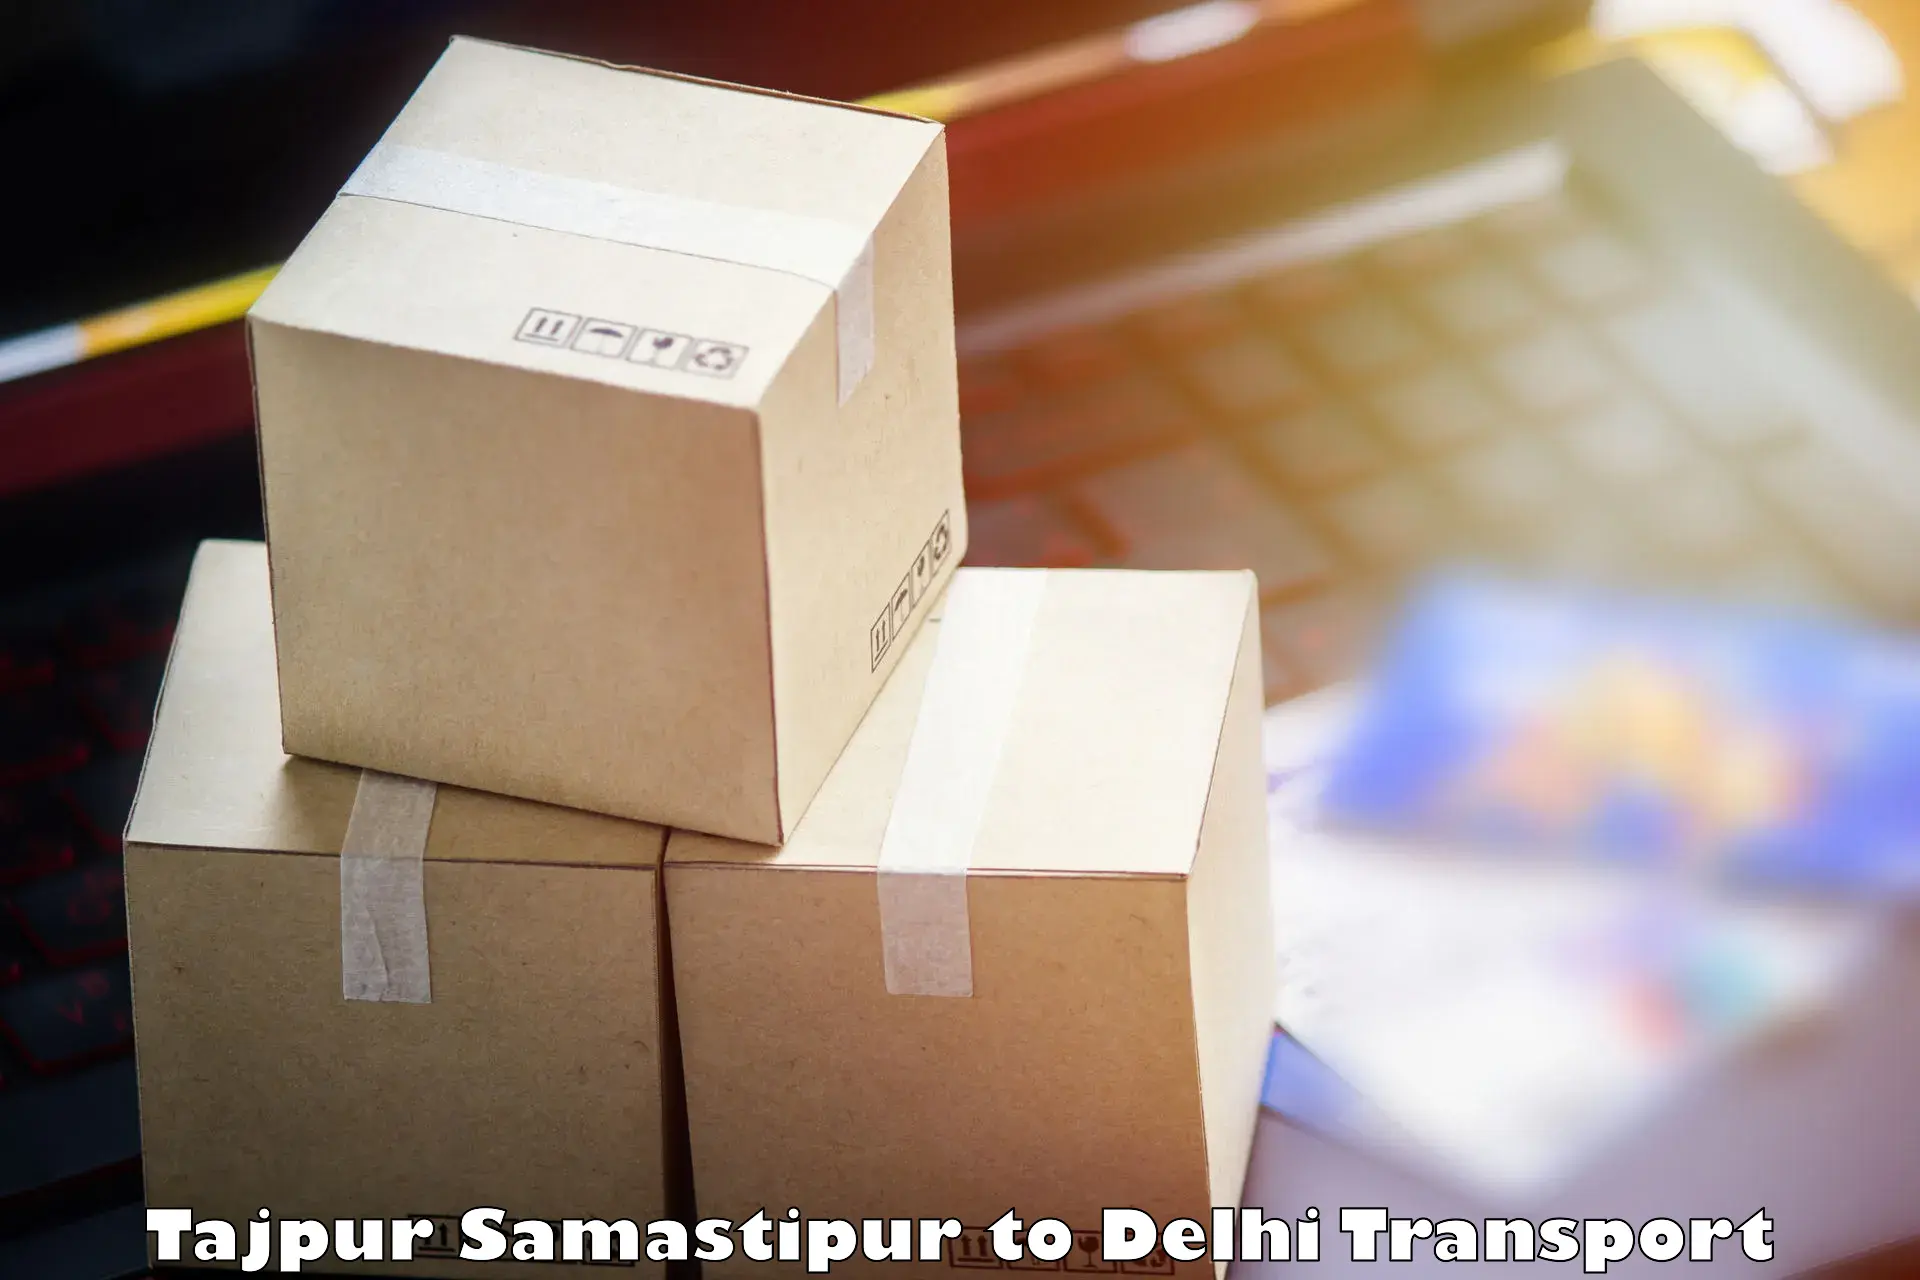 Cargo transportation services Tajpur Samastipur to Delhi